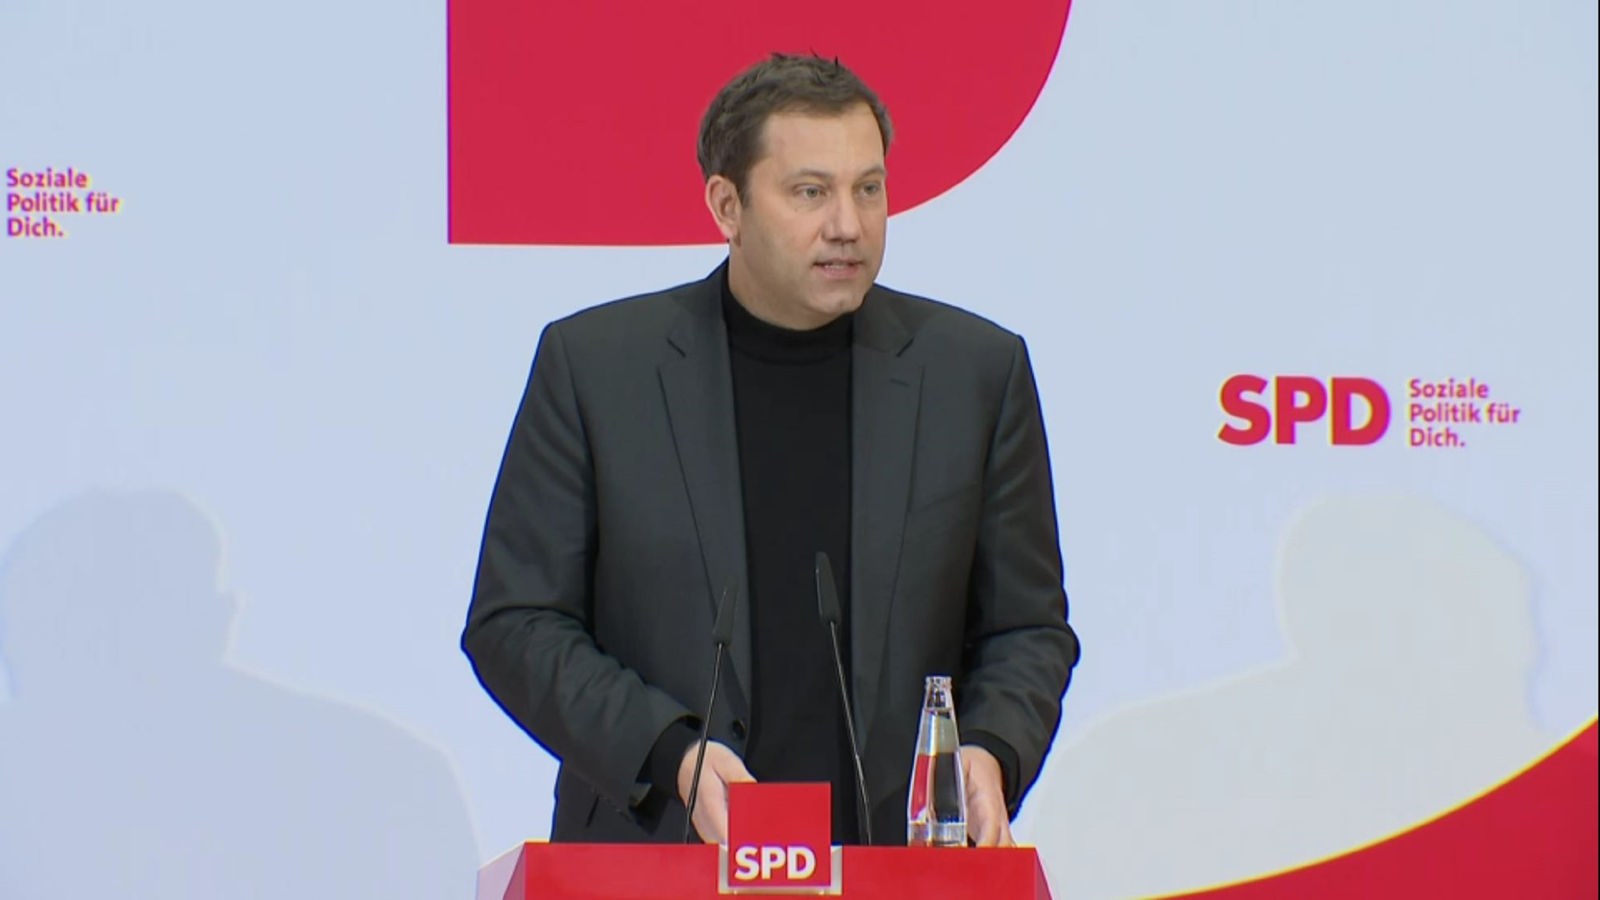 Oświadczenie SPD w sprawie polityki zagranicznej: „Punkt zwrotny” w stosunkach z Rosją